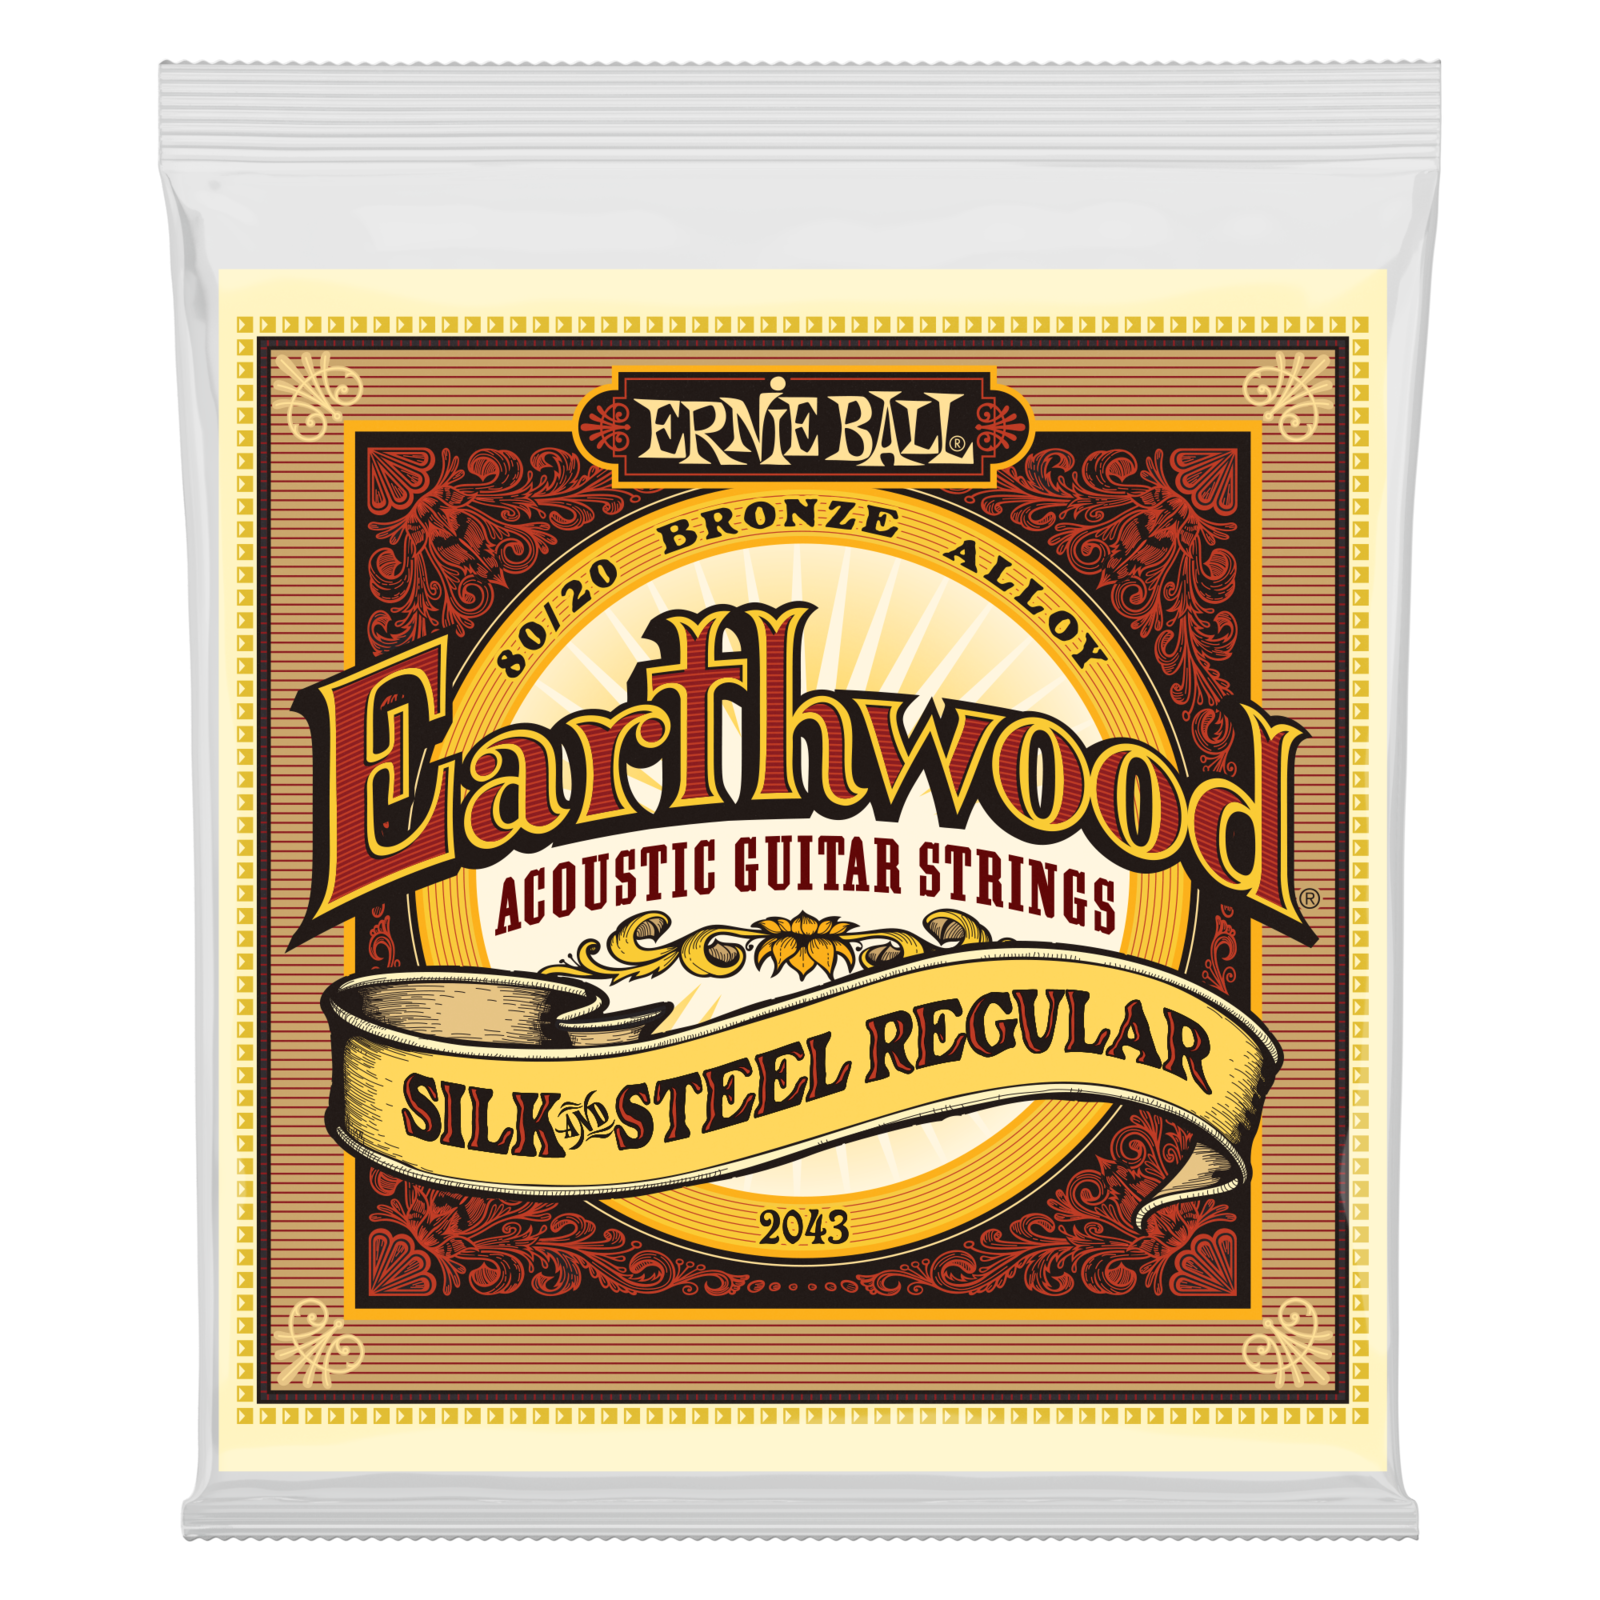 Akusztikus gitárhúrok Ernie Ball 2043 Earthwood Silk & Steel